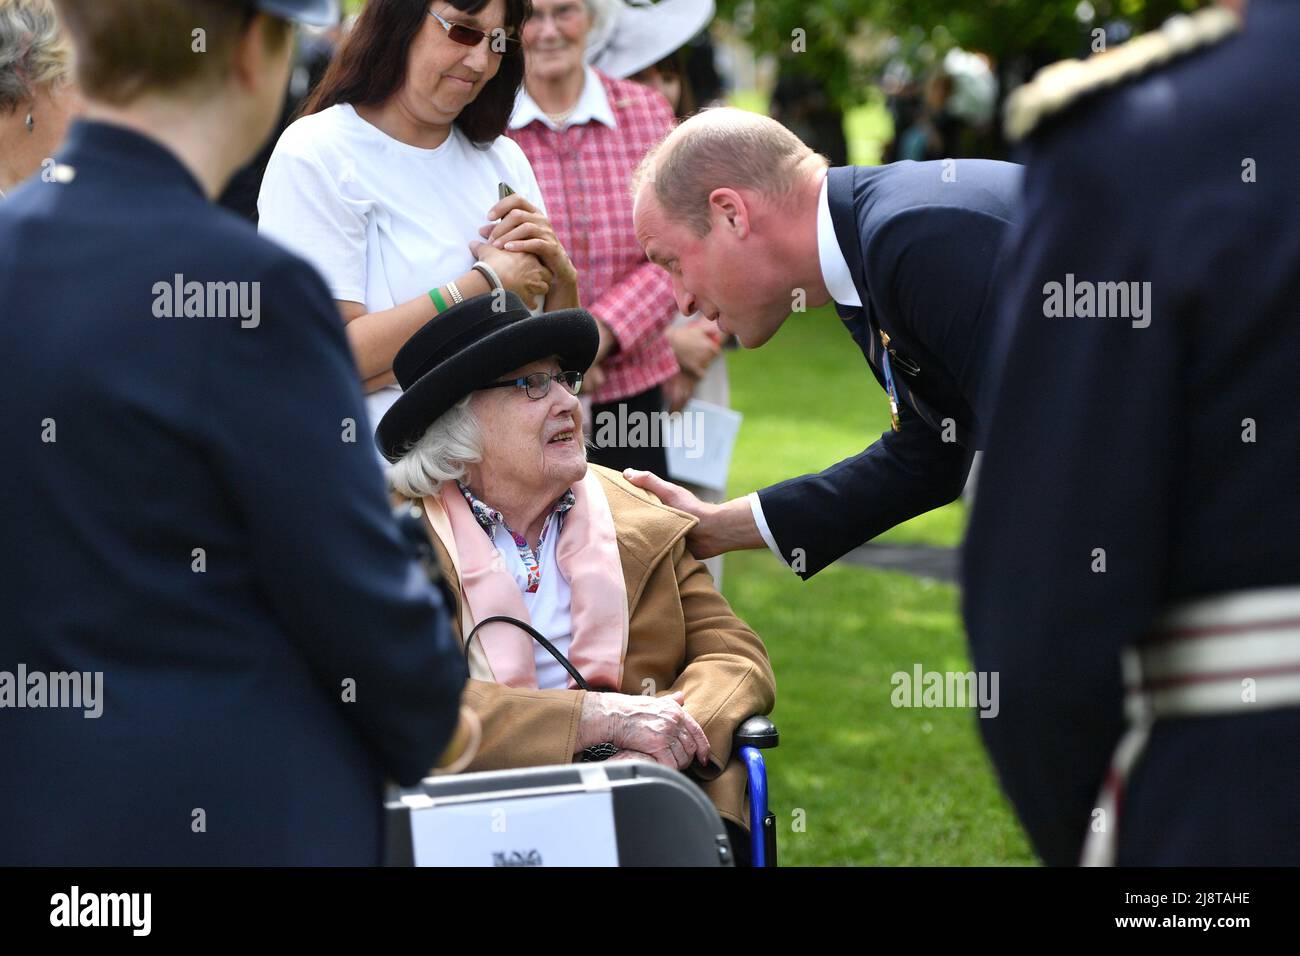 El Duque de Cambridge habla con Diana Mayes, de 100 años, viuda en 1943, durante la inauguración de un monumento conmemorativo a los submarinos en el National Memorial Arboretum de Staffordshire. Fecha de la foto: Miércoles 18 de mayo de 2022. Foto de stock